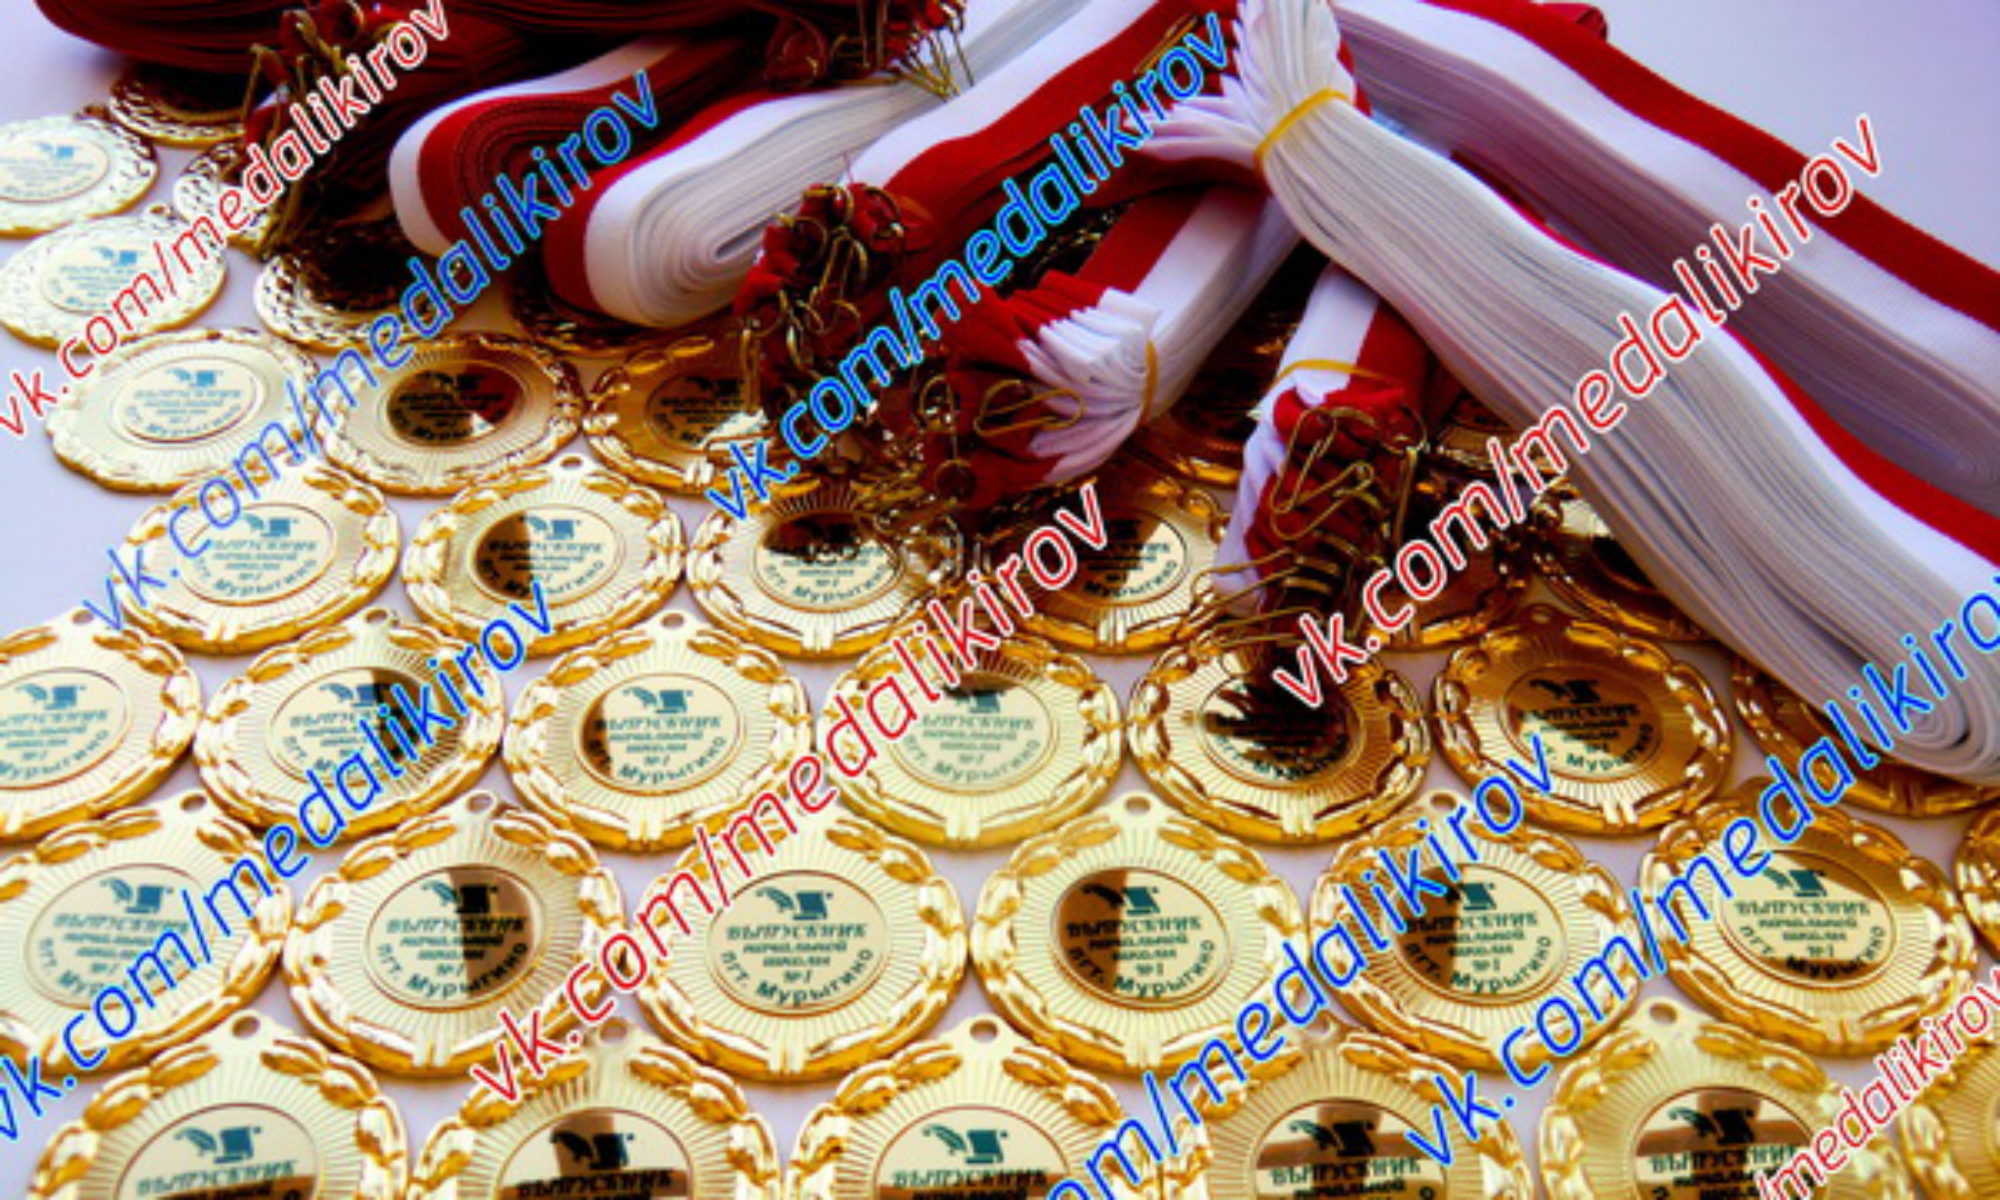 Награды, медали, кубки, дипломы тел. (8332) 205-215